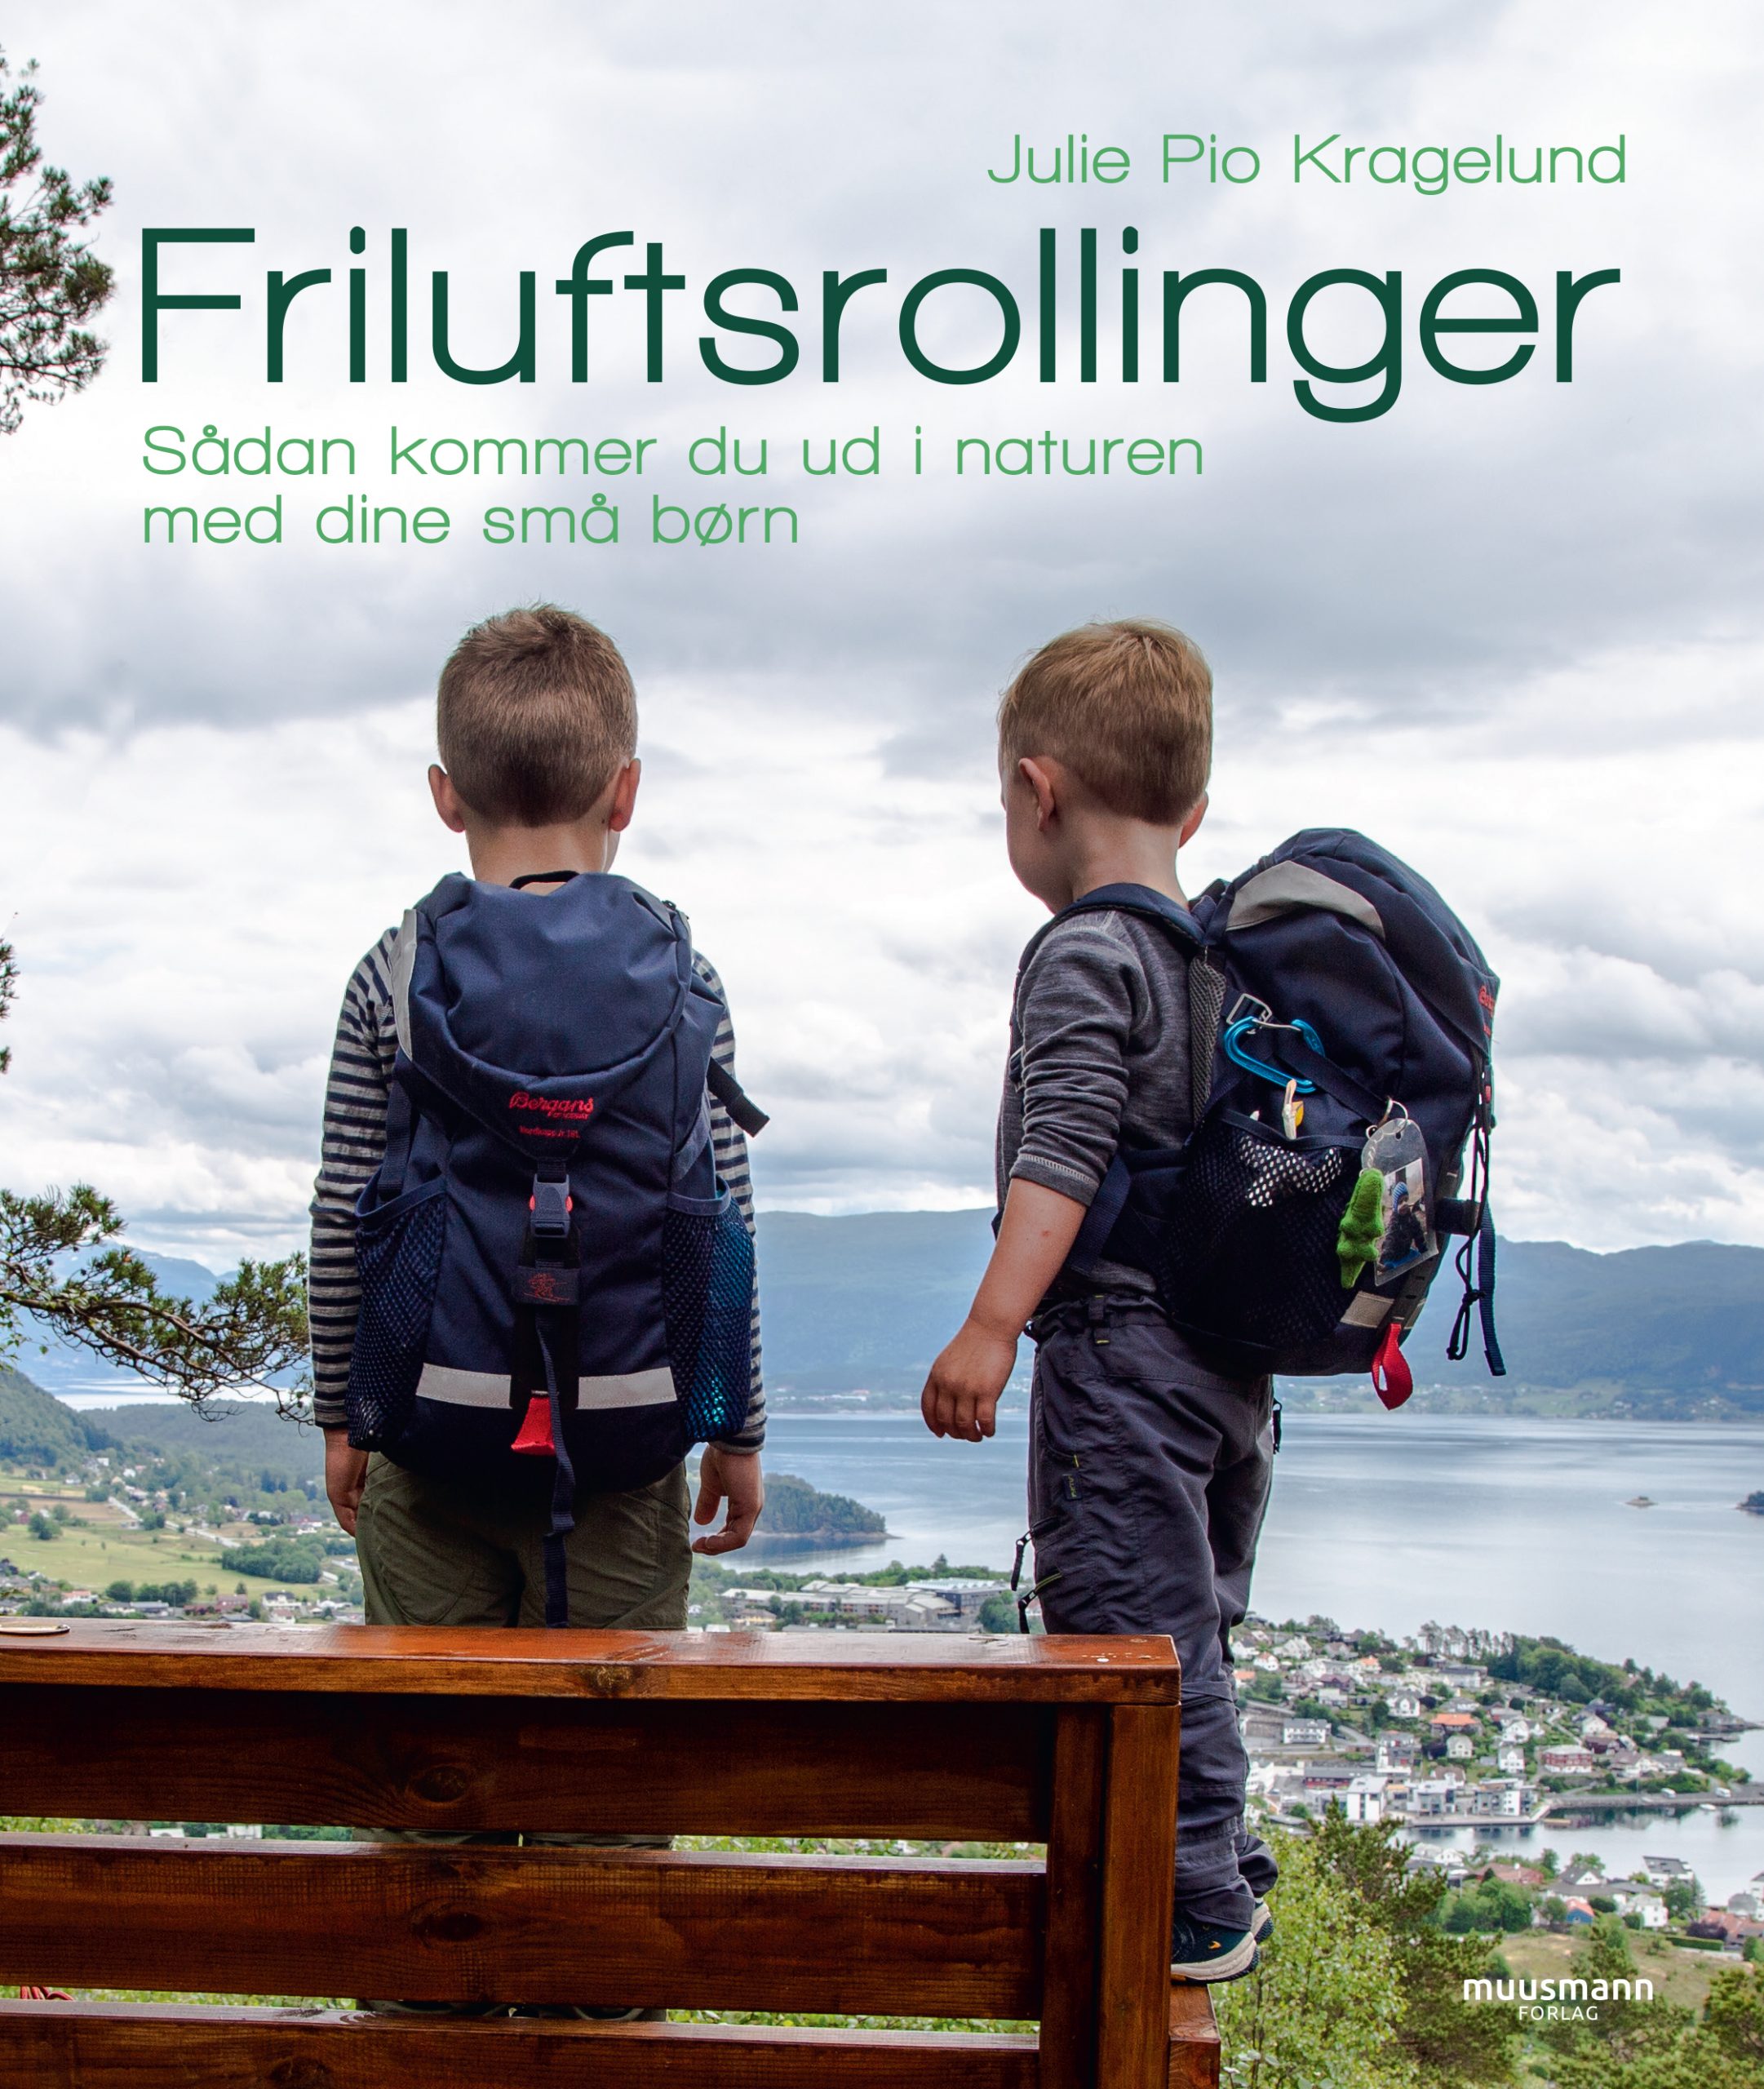 Friluftsrollinger Sådan kommer du ud i naturen med dine små børn Julie Pio Kragelund Muusmann Forlag Friluftsliv